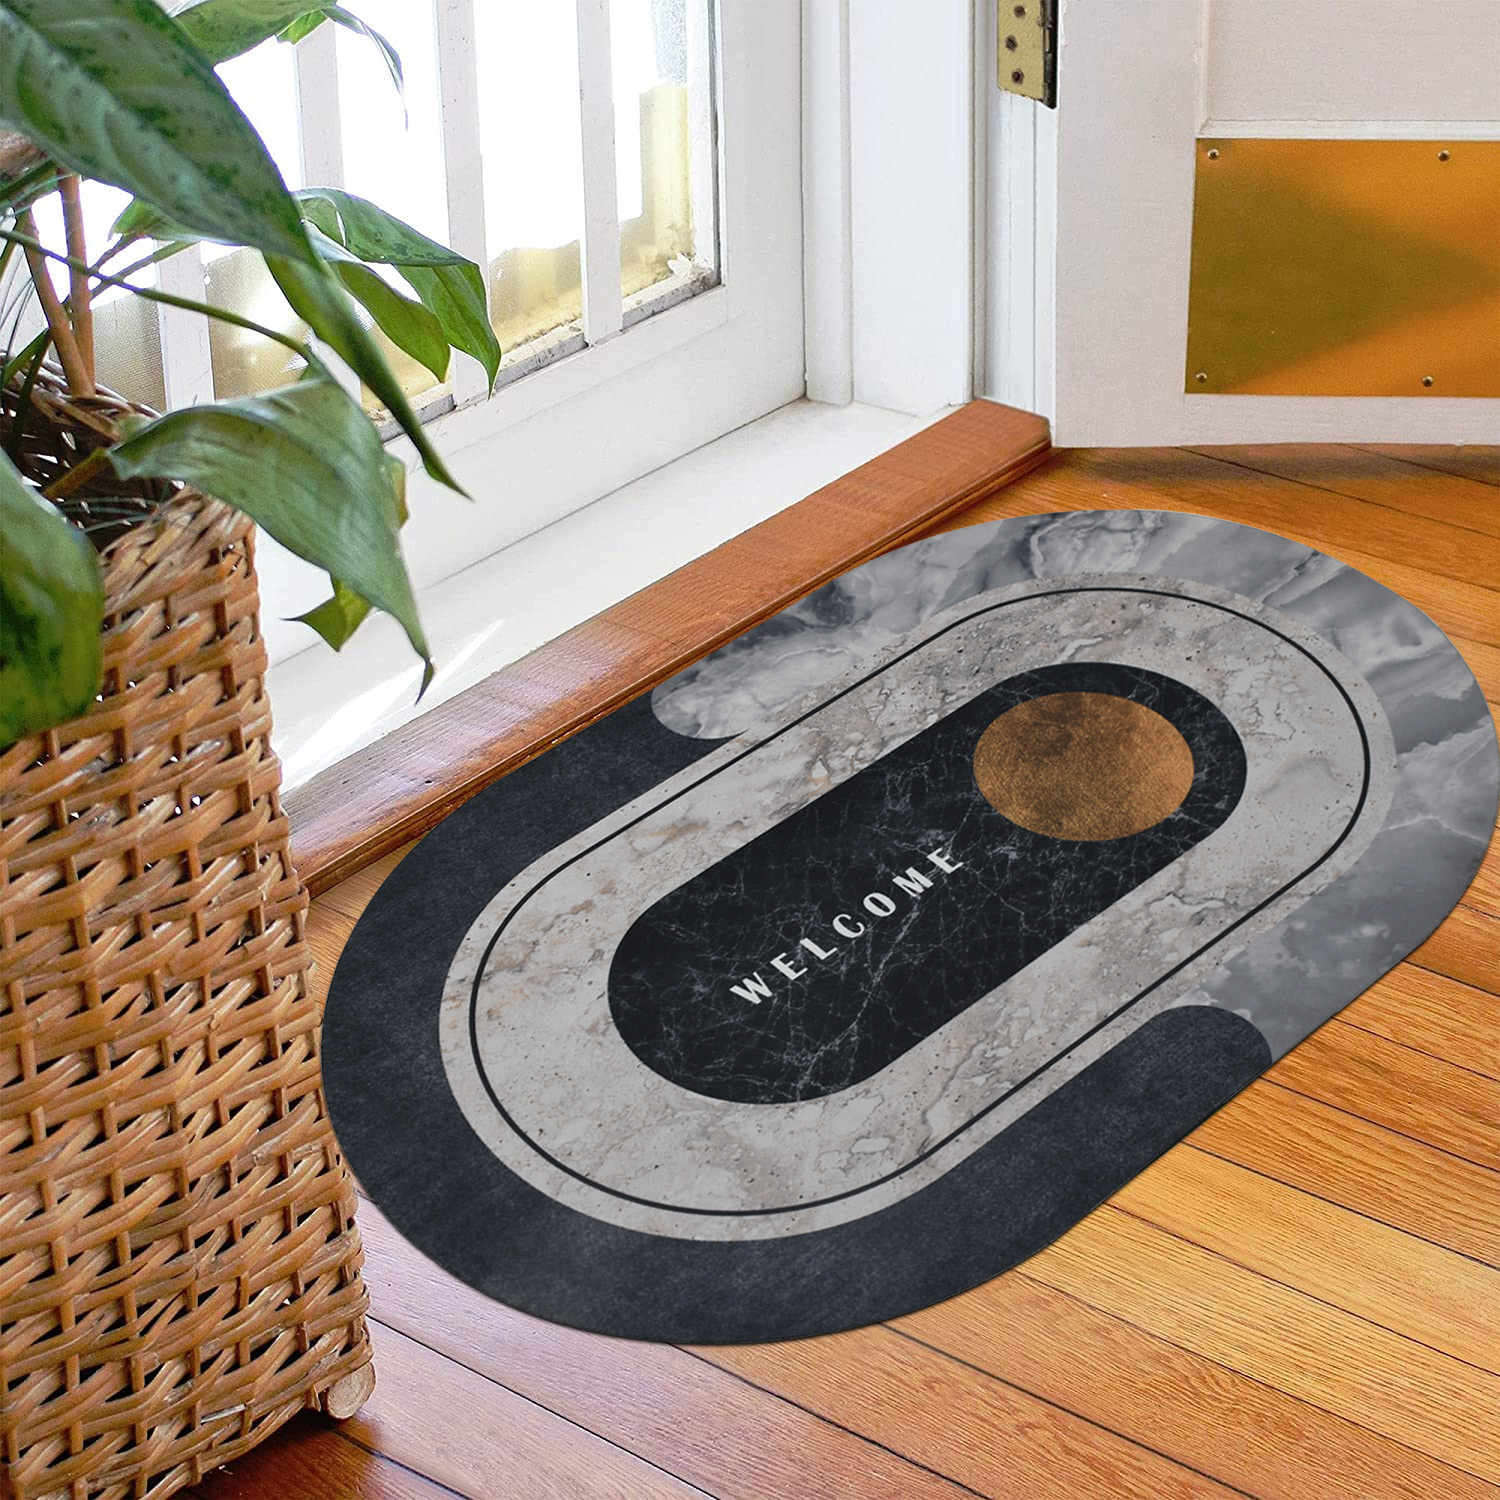 Kuber Industries Doormat|Doormat for Door Entrance|Doormats for Rooms|Doormat for Home|Memory Foam welcome Home Doormat|Pack of 2 (White & Grey)